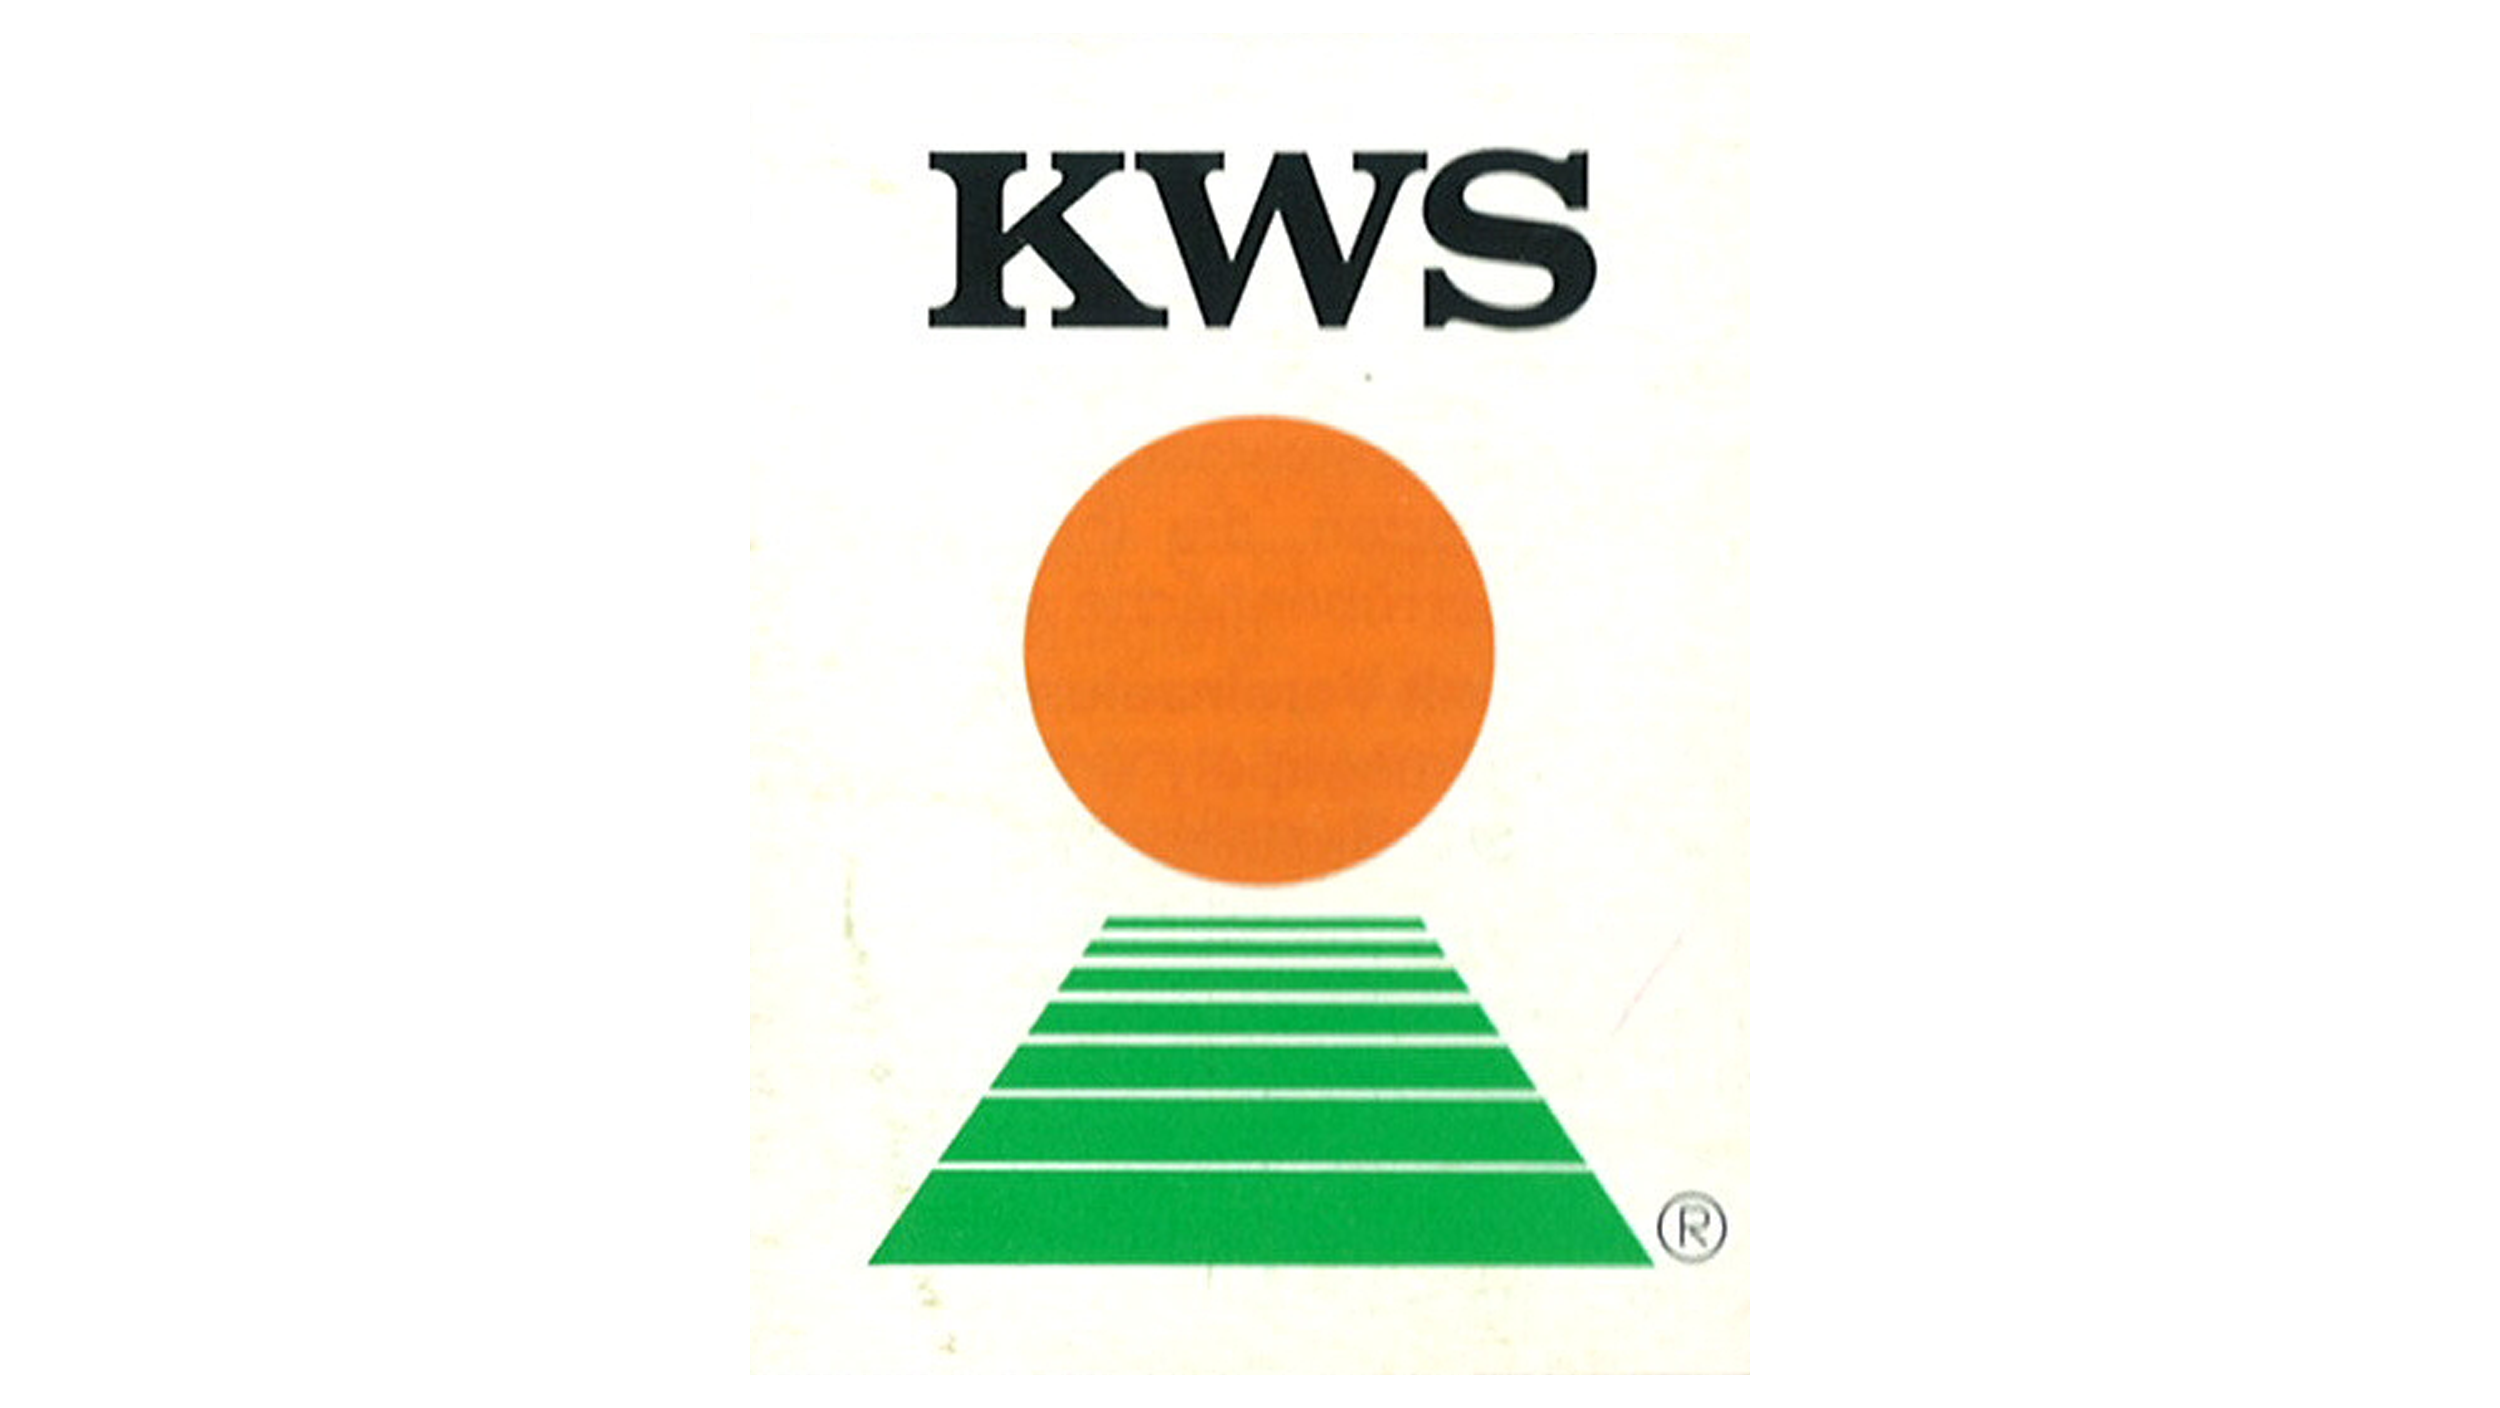 KWS logosu 1972’den beri